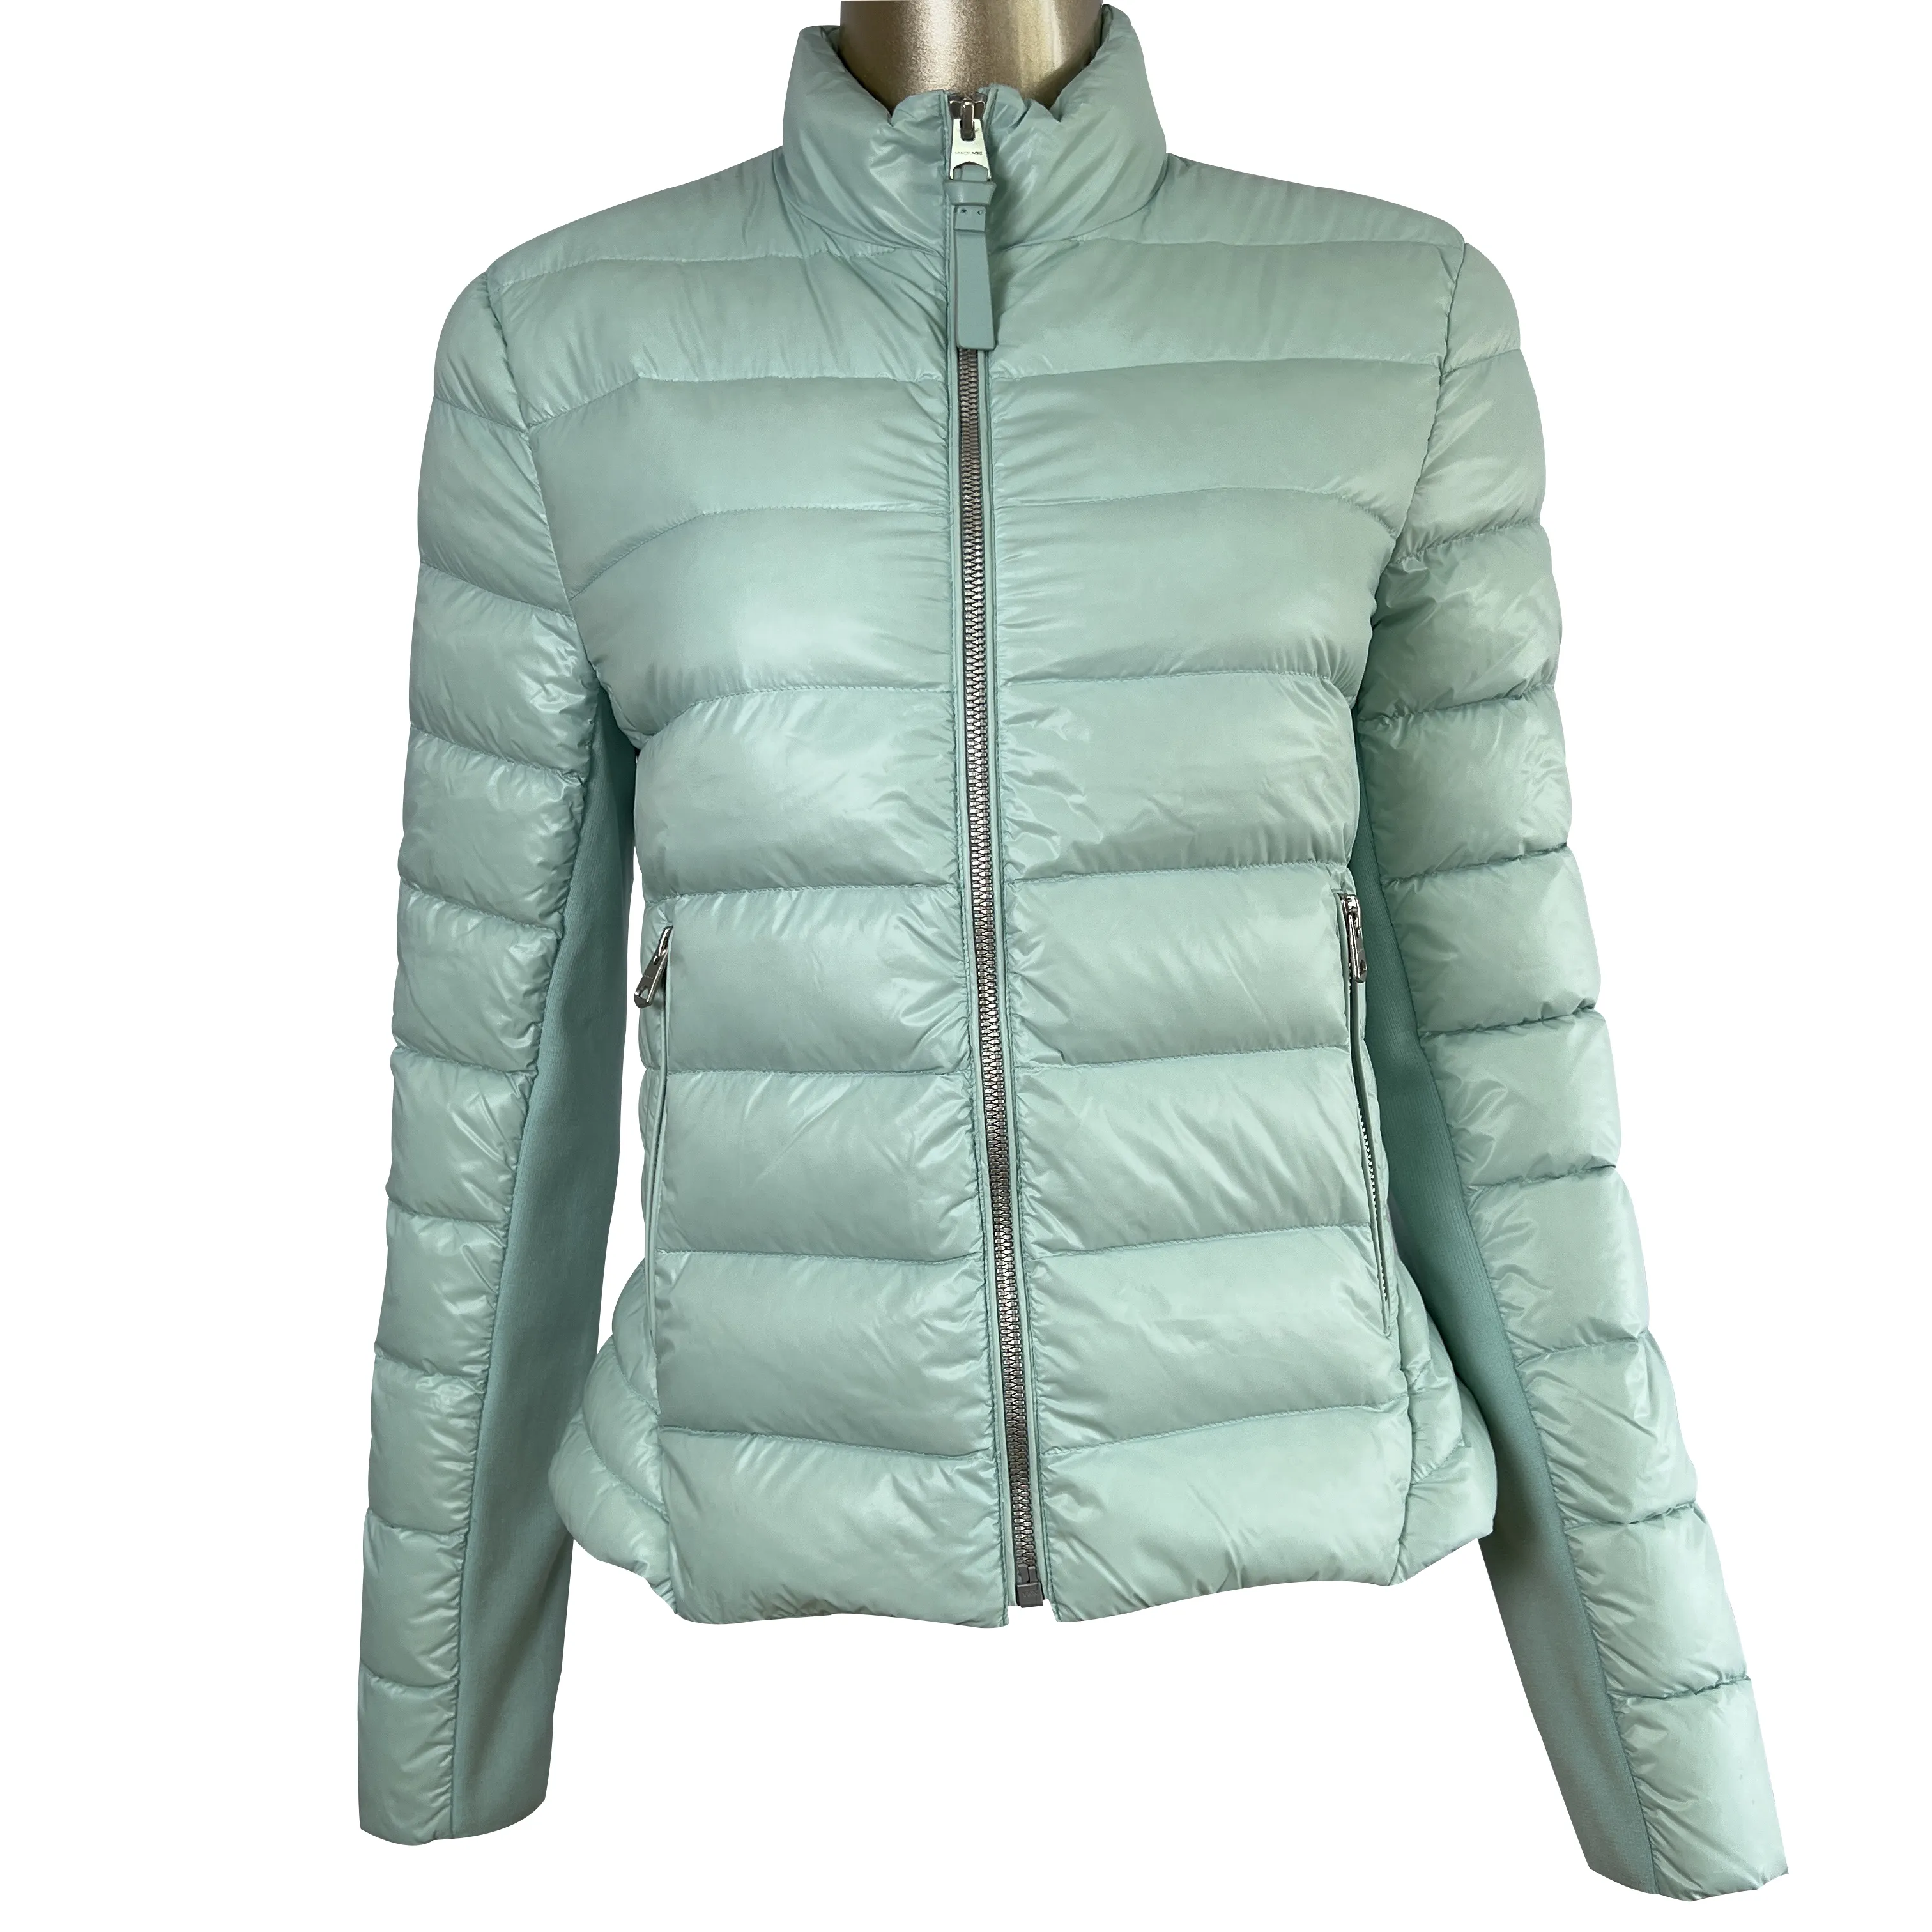 2023 फैशन महिलाओं Parka सर्दियों के नीचे कोट सर्दियों रजाई बना हुआ जैकेट